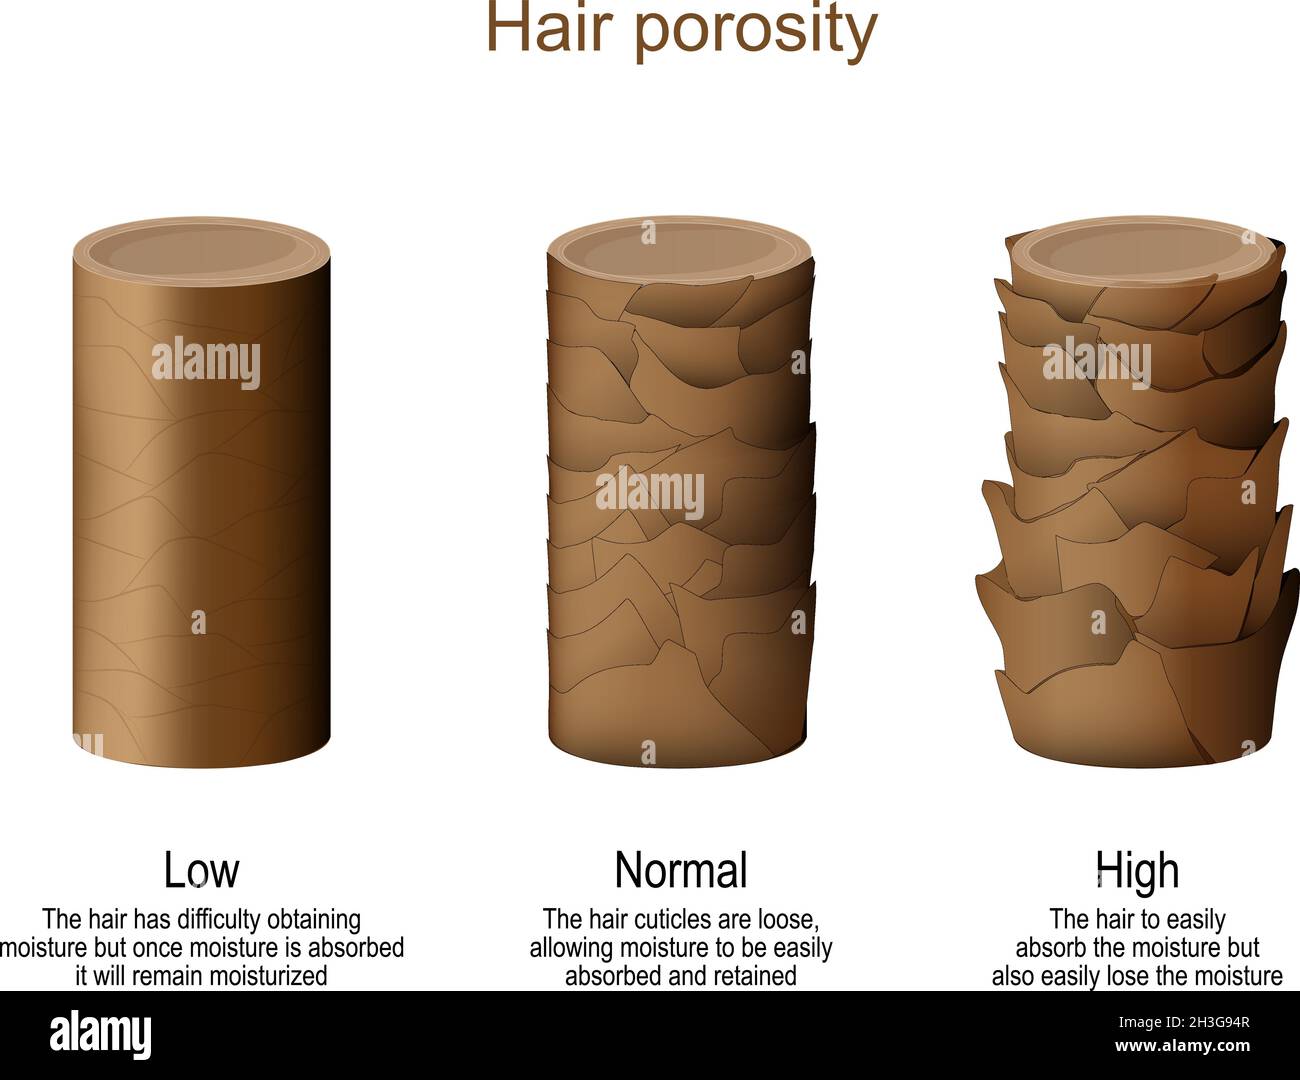 Haarporosität. Niedrig - Schwierigkeiten beim Erhalt von Feuchtigkeit. Normal – Feuchtigkeit kann leicht aufgenommen und zurückgehalten werden. Stock Vektor